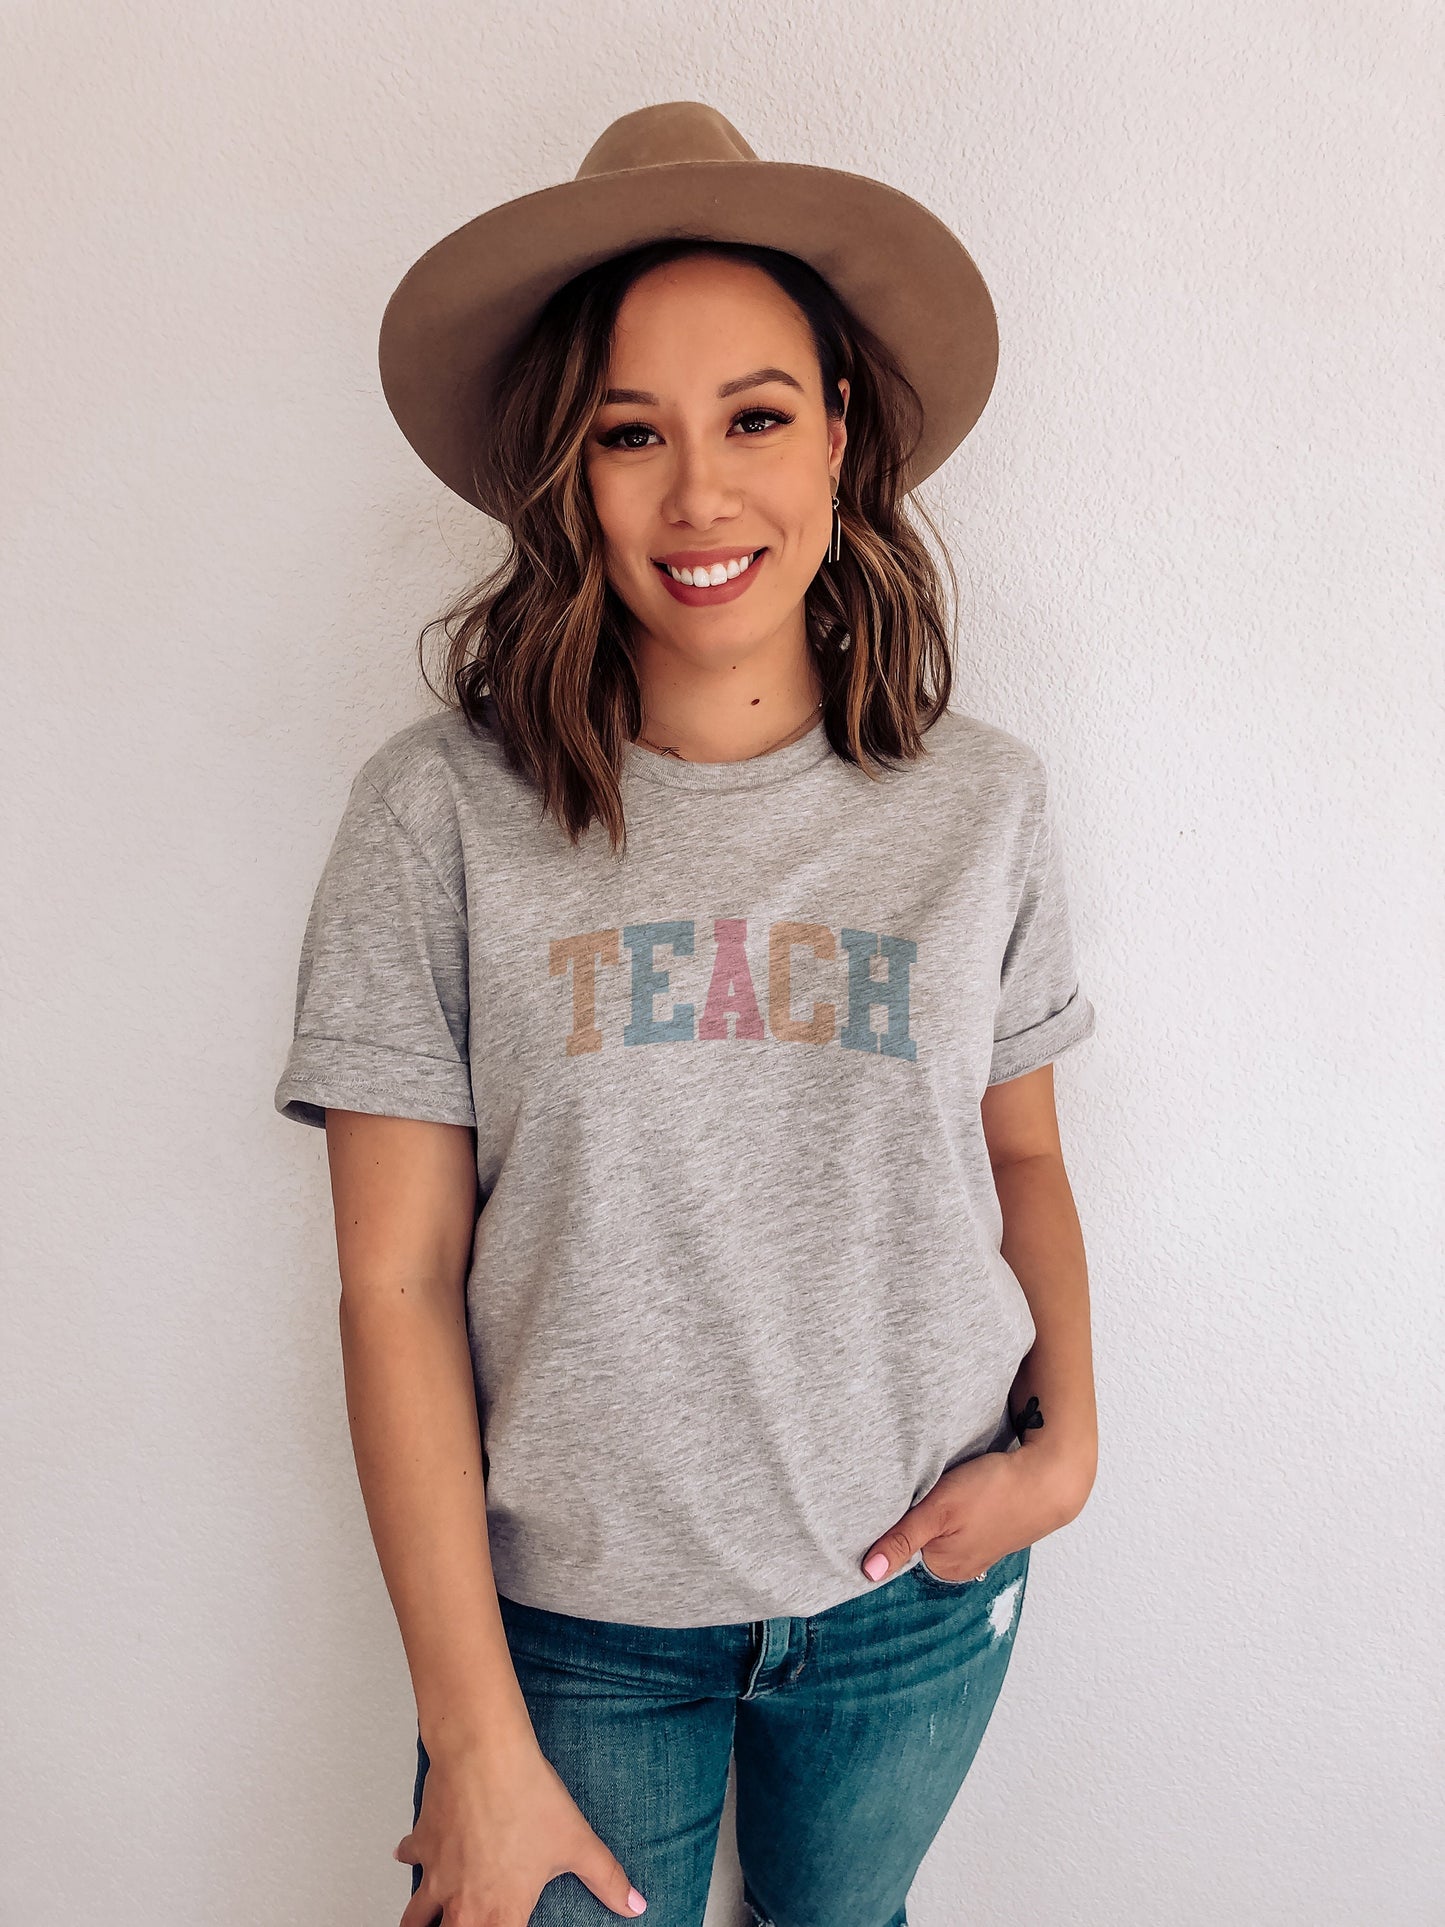 Teach - Teachers Shirts - Teacher Gift